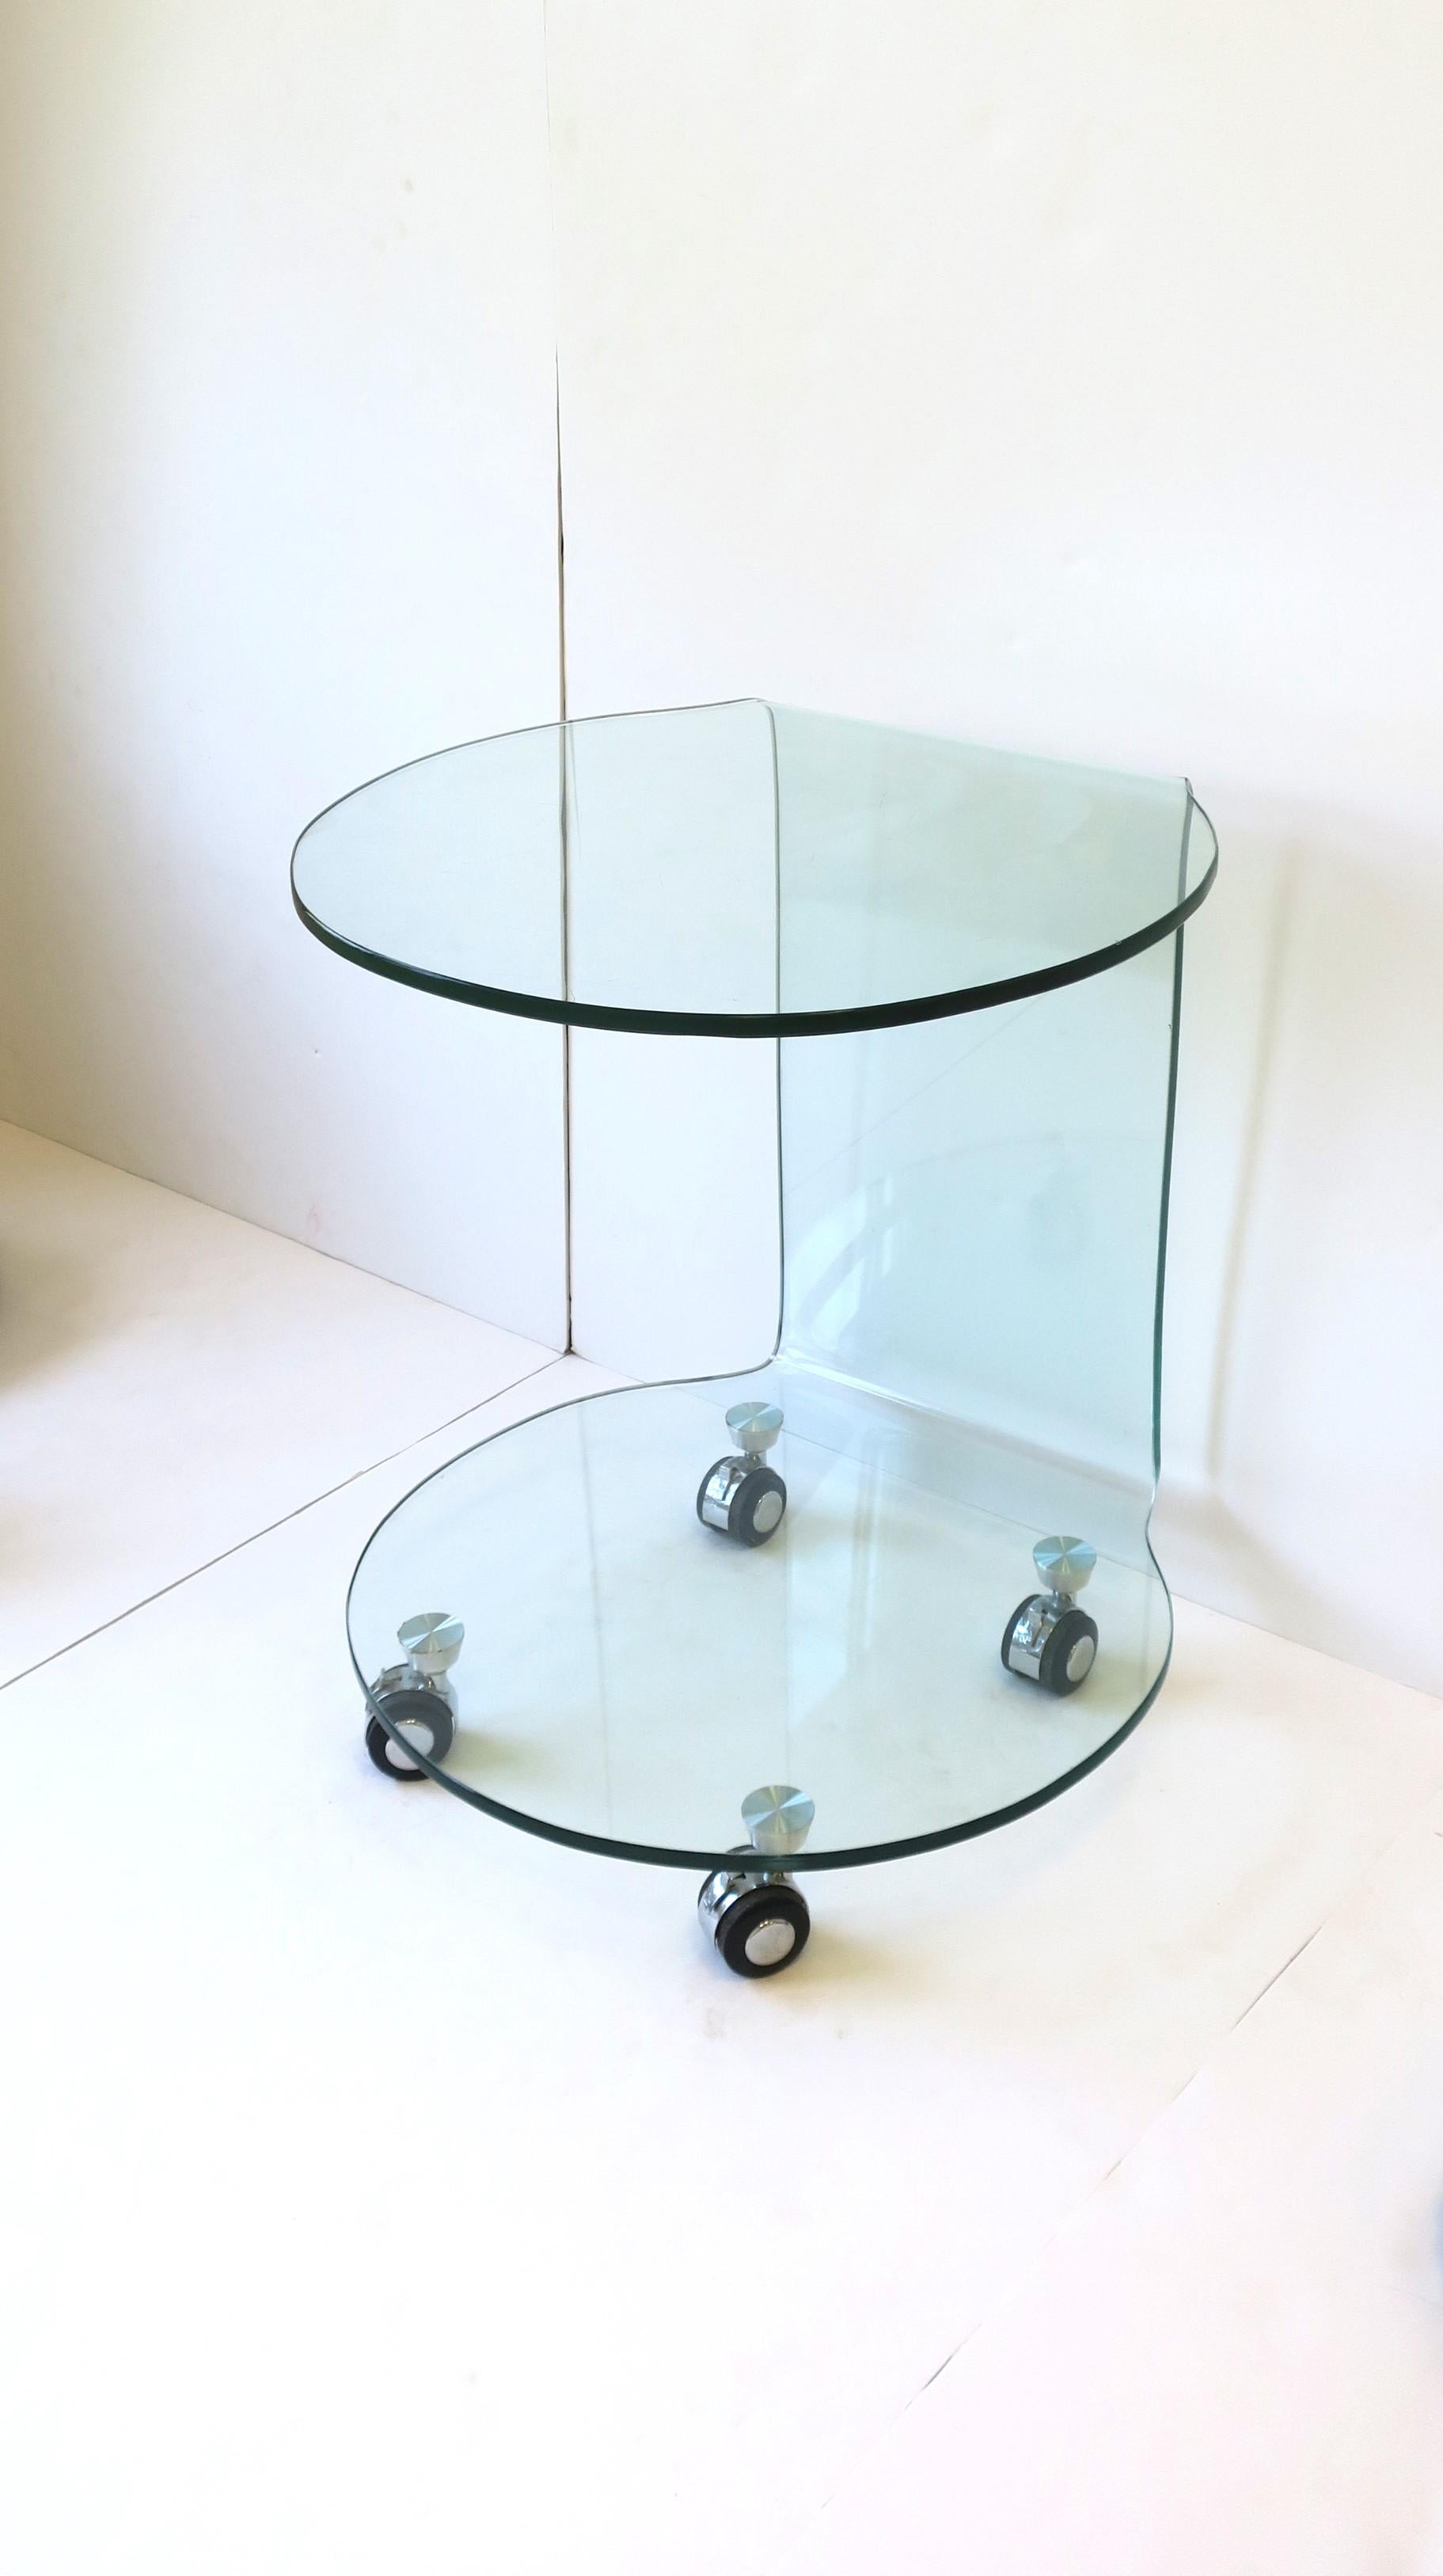 Table d'appoint ou de bout postmoderne en verre courbé dans le style de la maison de design italienne Fiam, vers la fin du 20e siècle. Table d'appoint ou table à boire en verre courbé, avec étagère inférieure et roues pivotantes à la base. Les roues